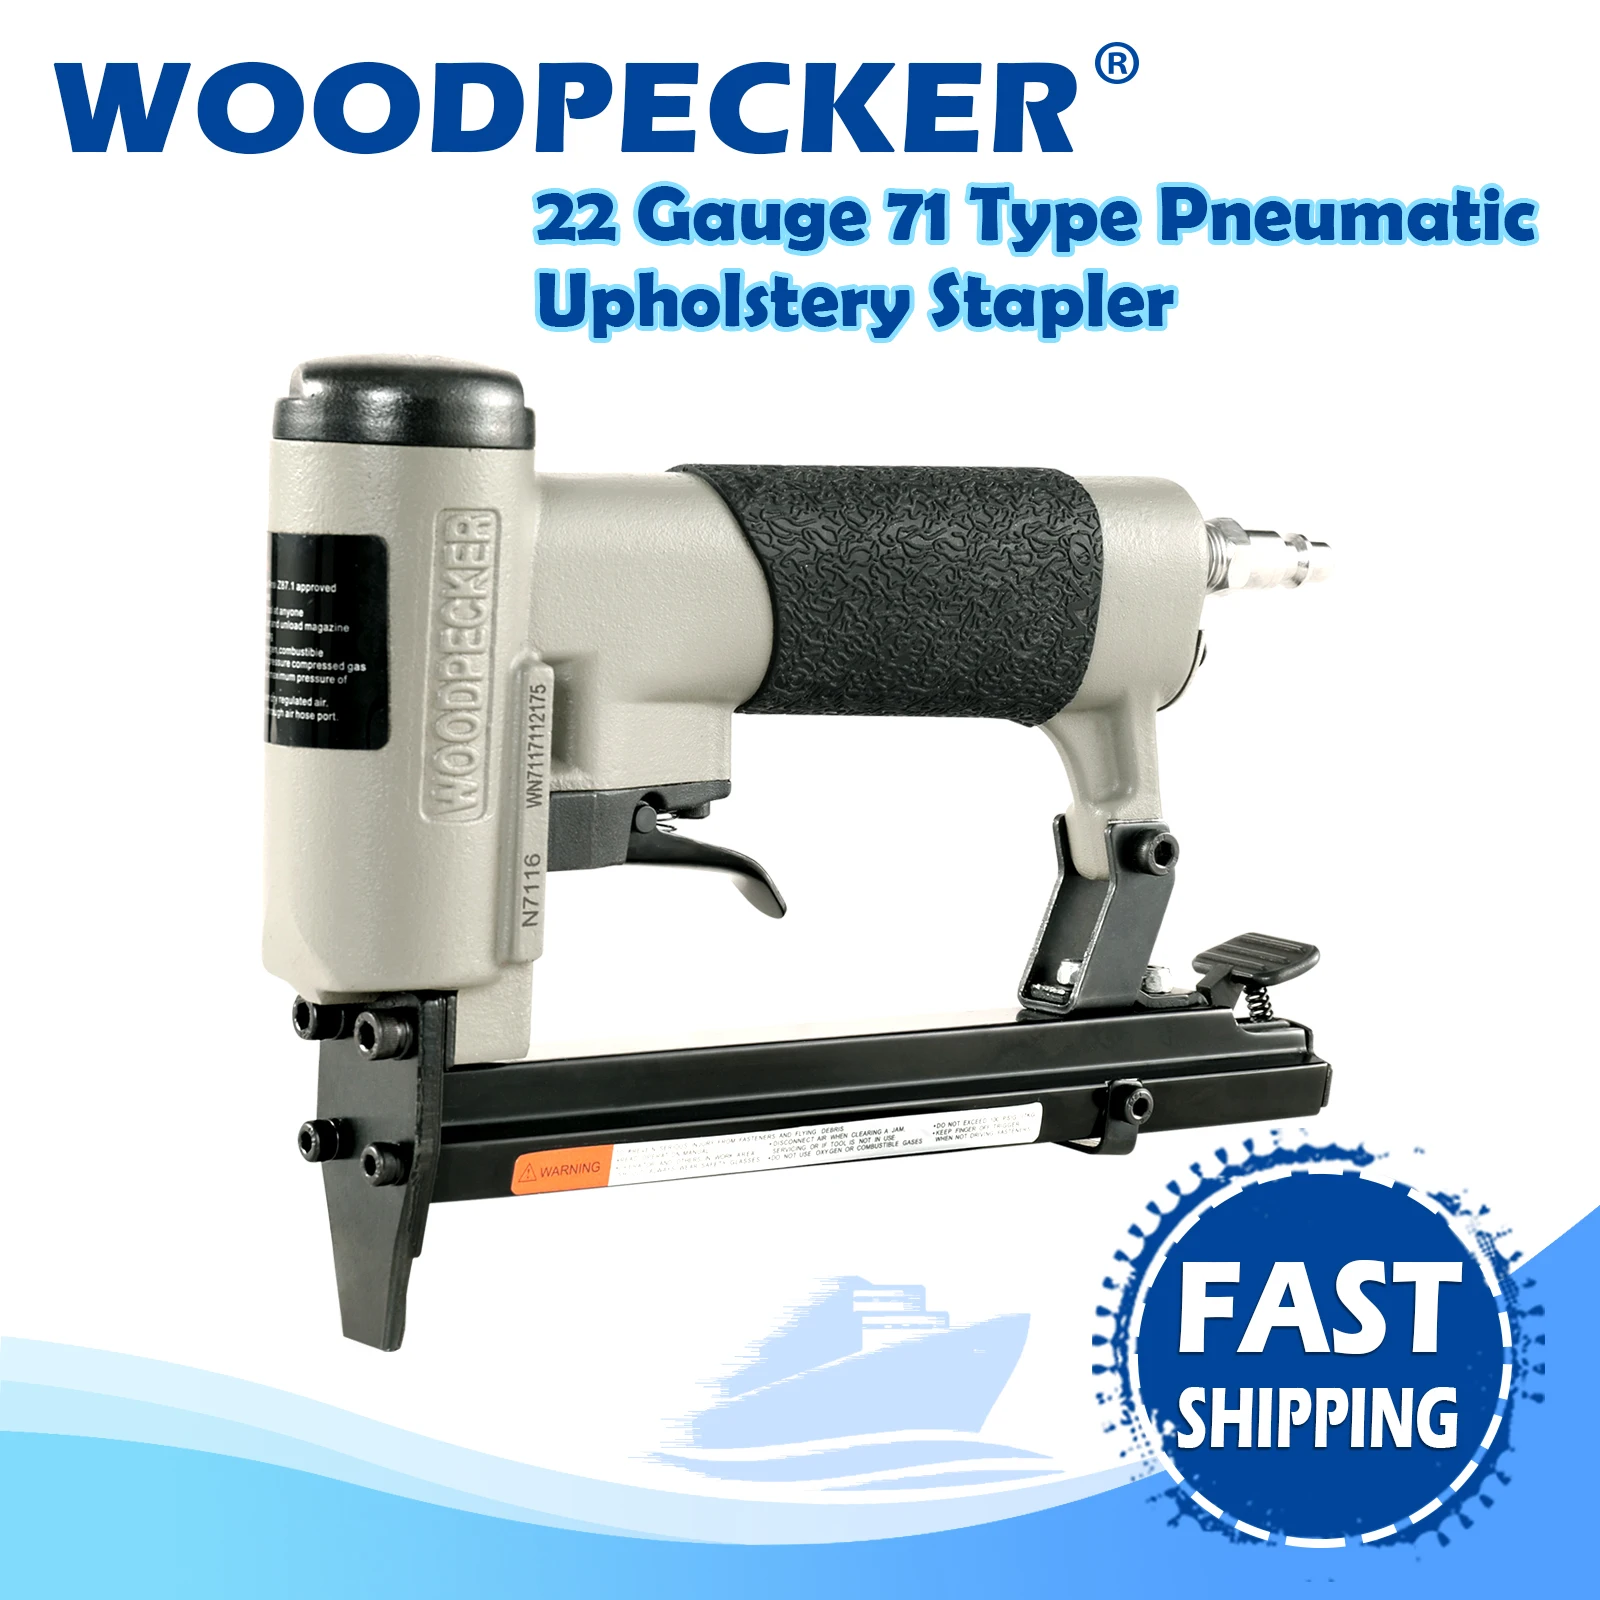 WOODPECKER N7116  22 Gauge 71/16 Pneumatic Upholstery Stapler Gun, 3/8 Air Stapler, 6-16mm Length Staples, for Furniture